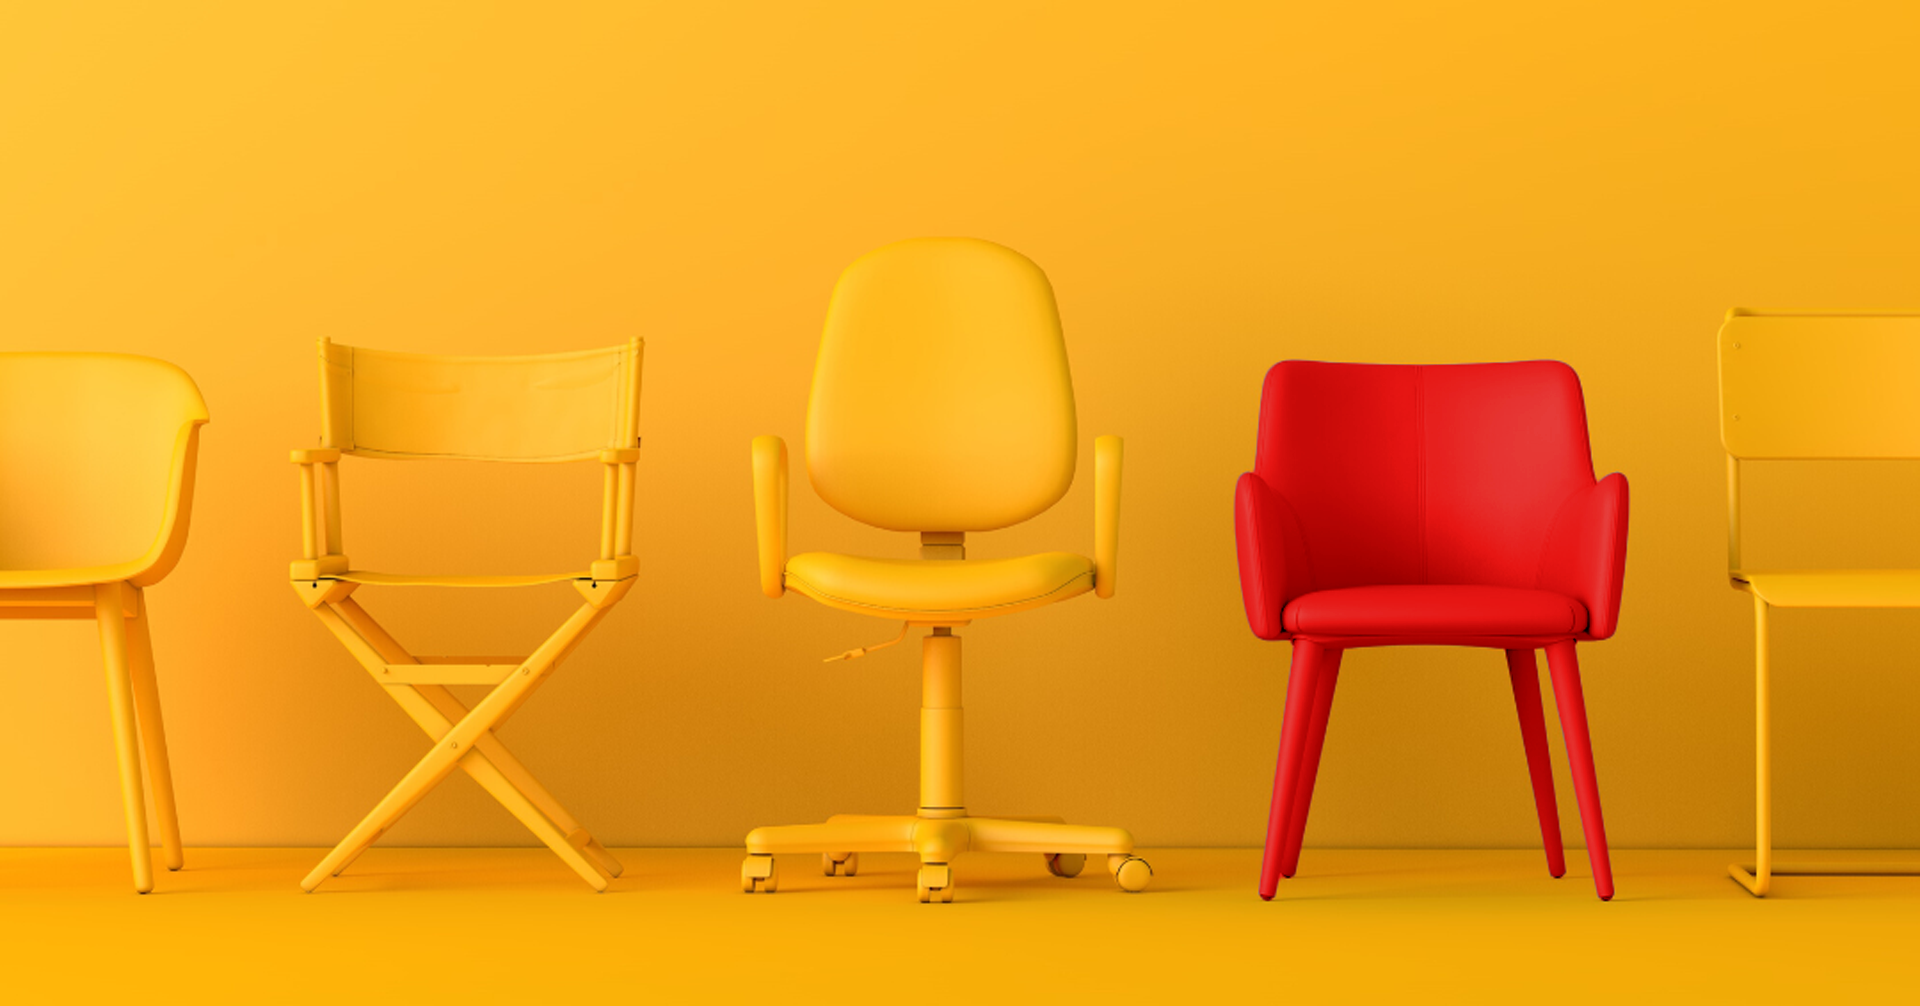 Erilaisia keltaisia tuoleja rivissä keltaisella taustalla. Yksi tuoleista on punainen.